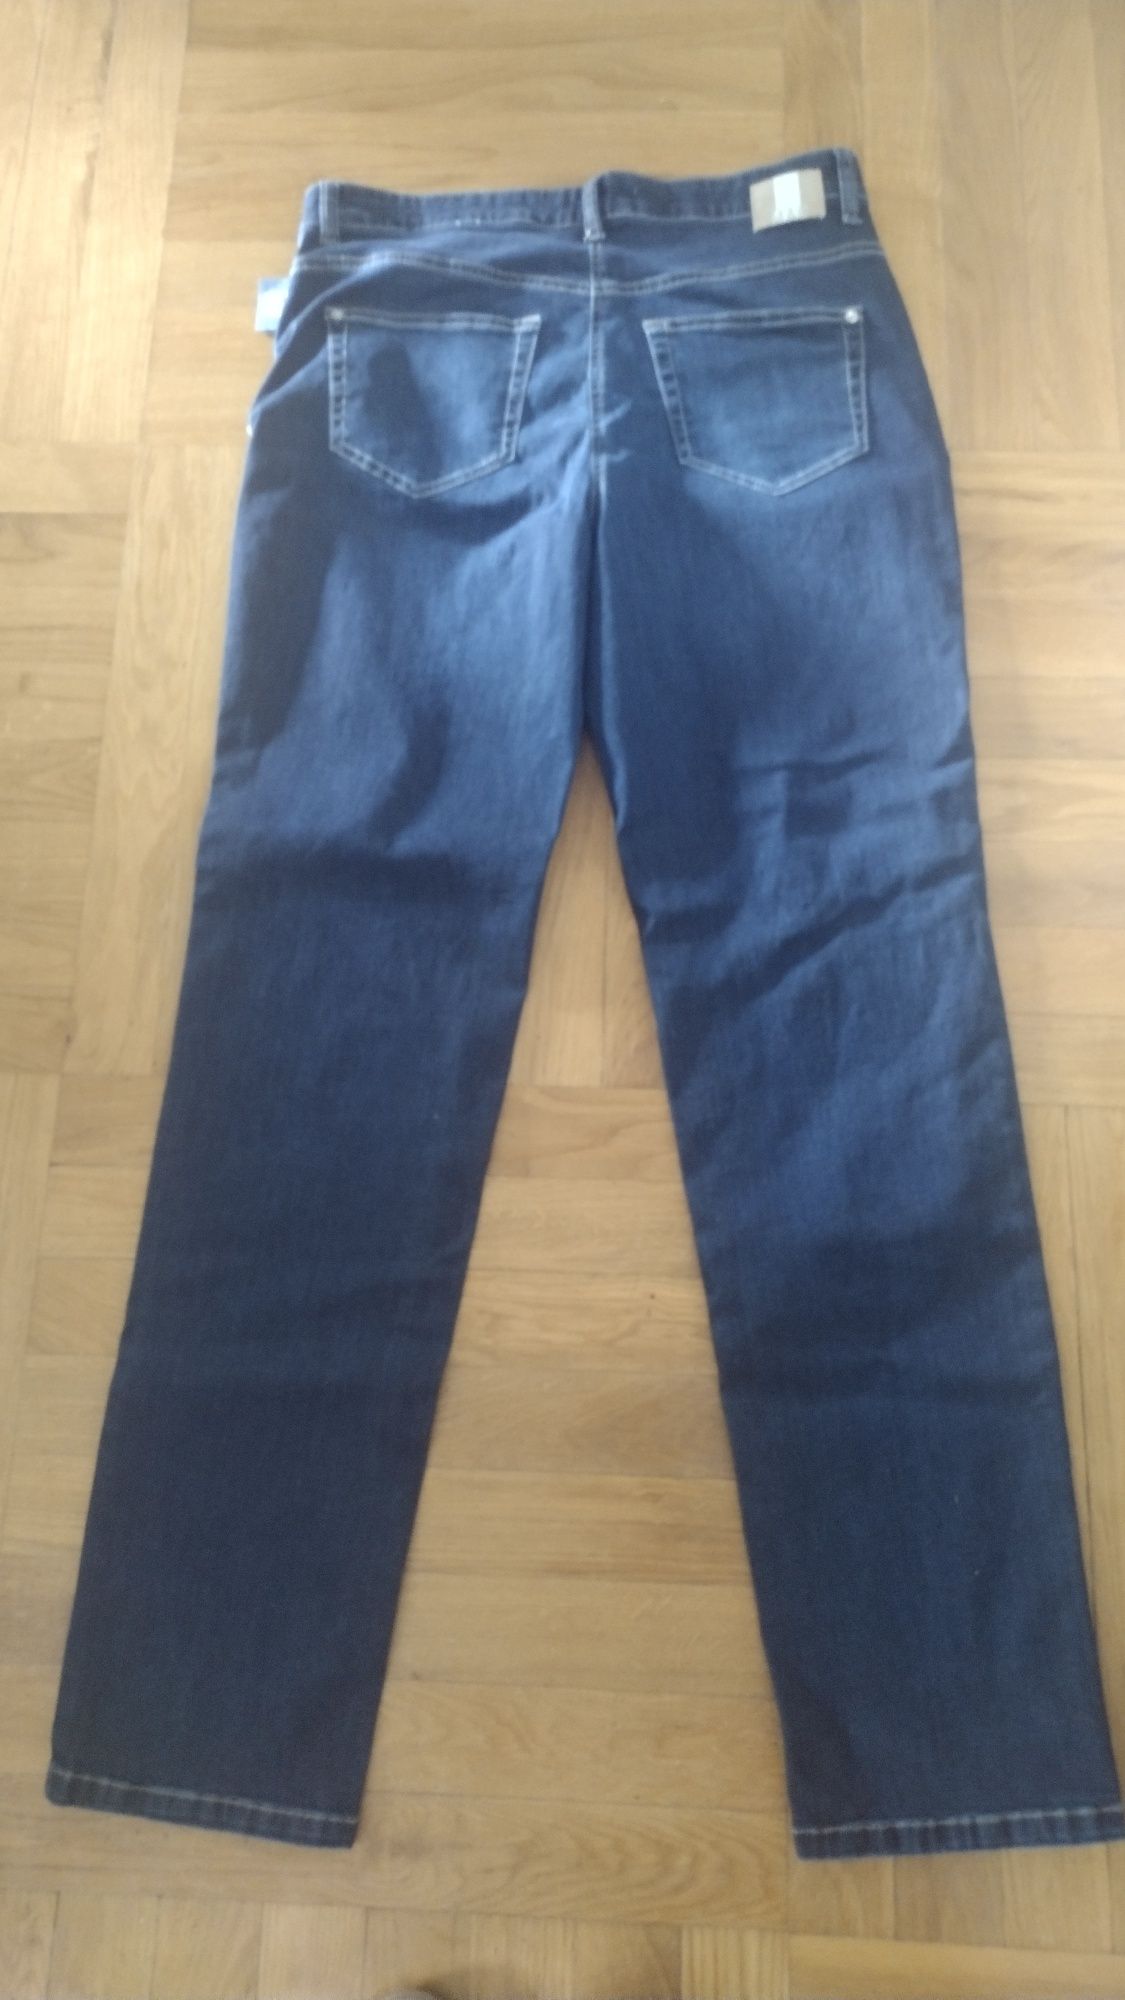 Spodnie jeansowe Mac nowe, rozmiar 44